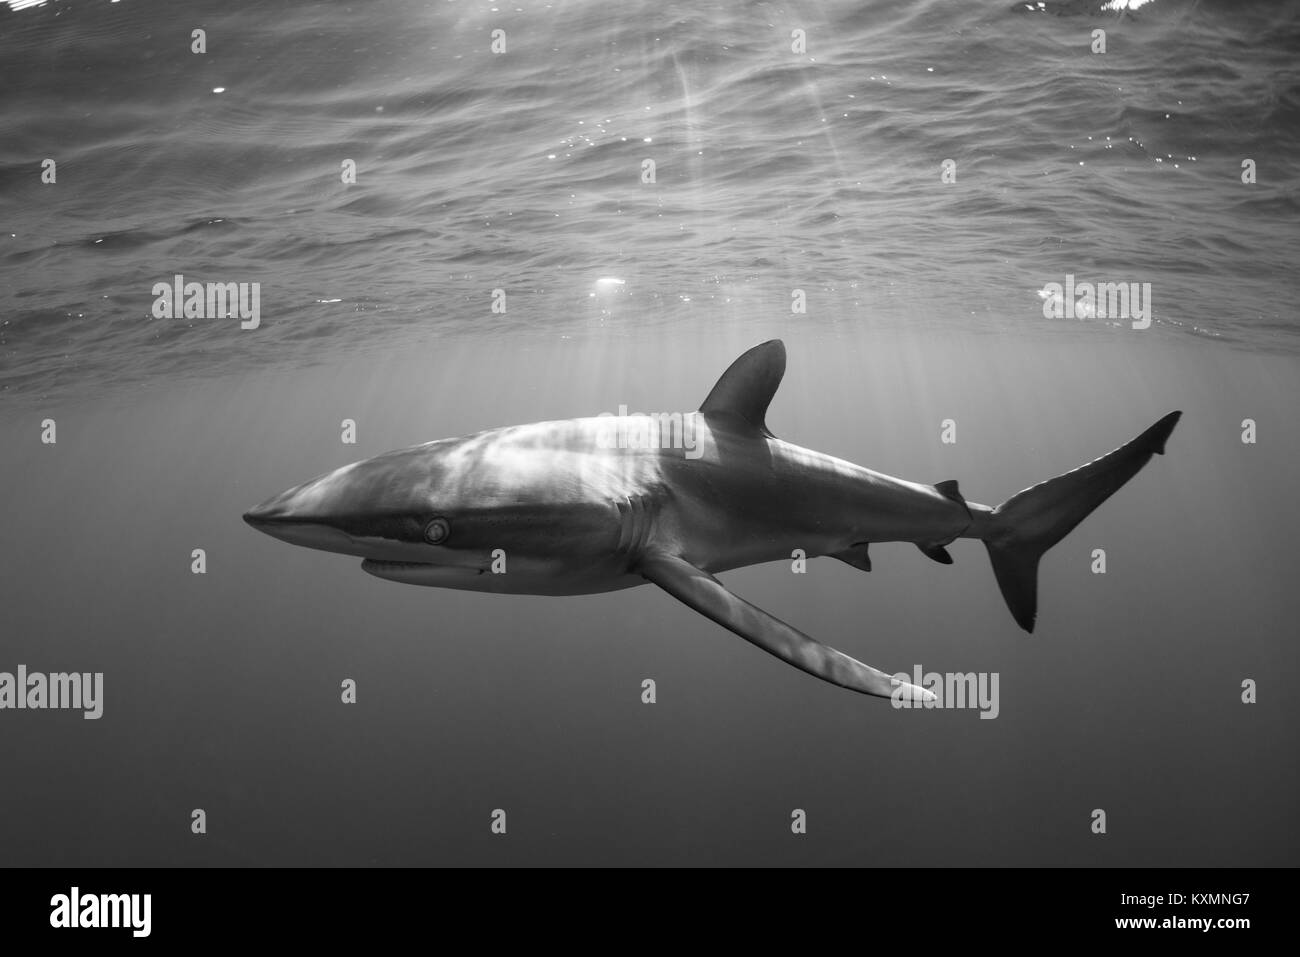 Sous-vue de Revillagigedo,requins,Tamaulipas,Mexique, Amérique du Nord Banque D'Images